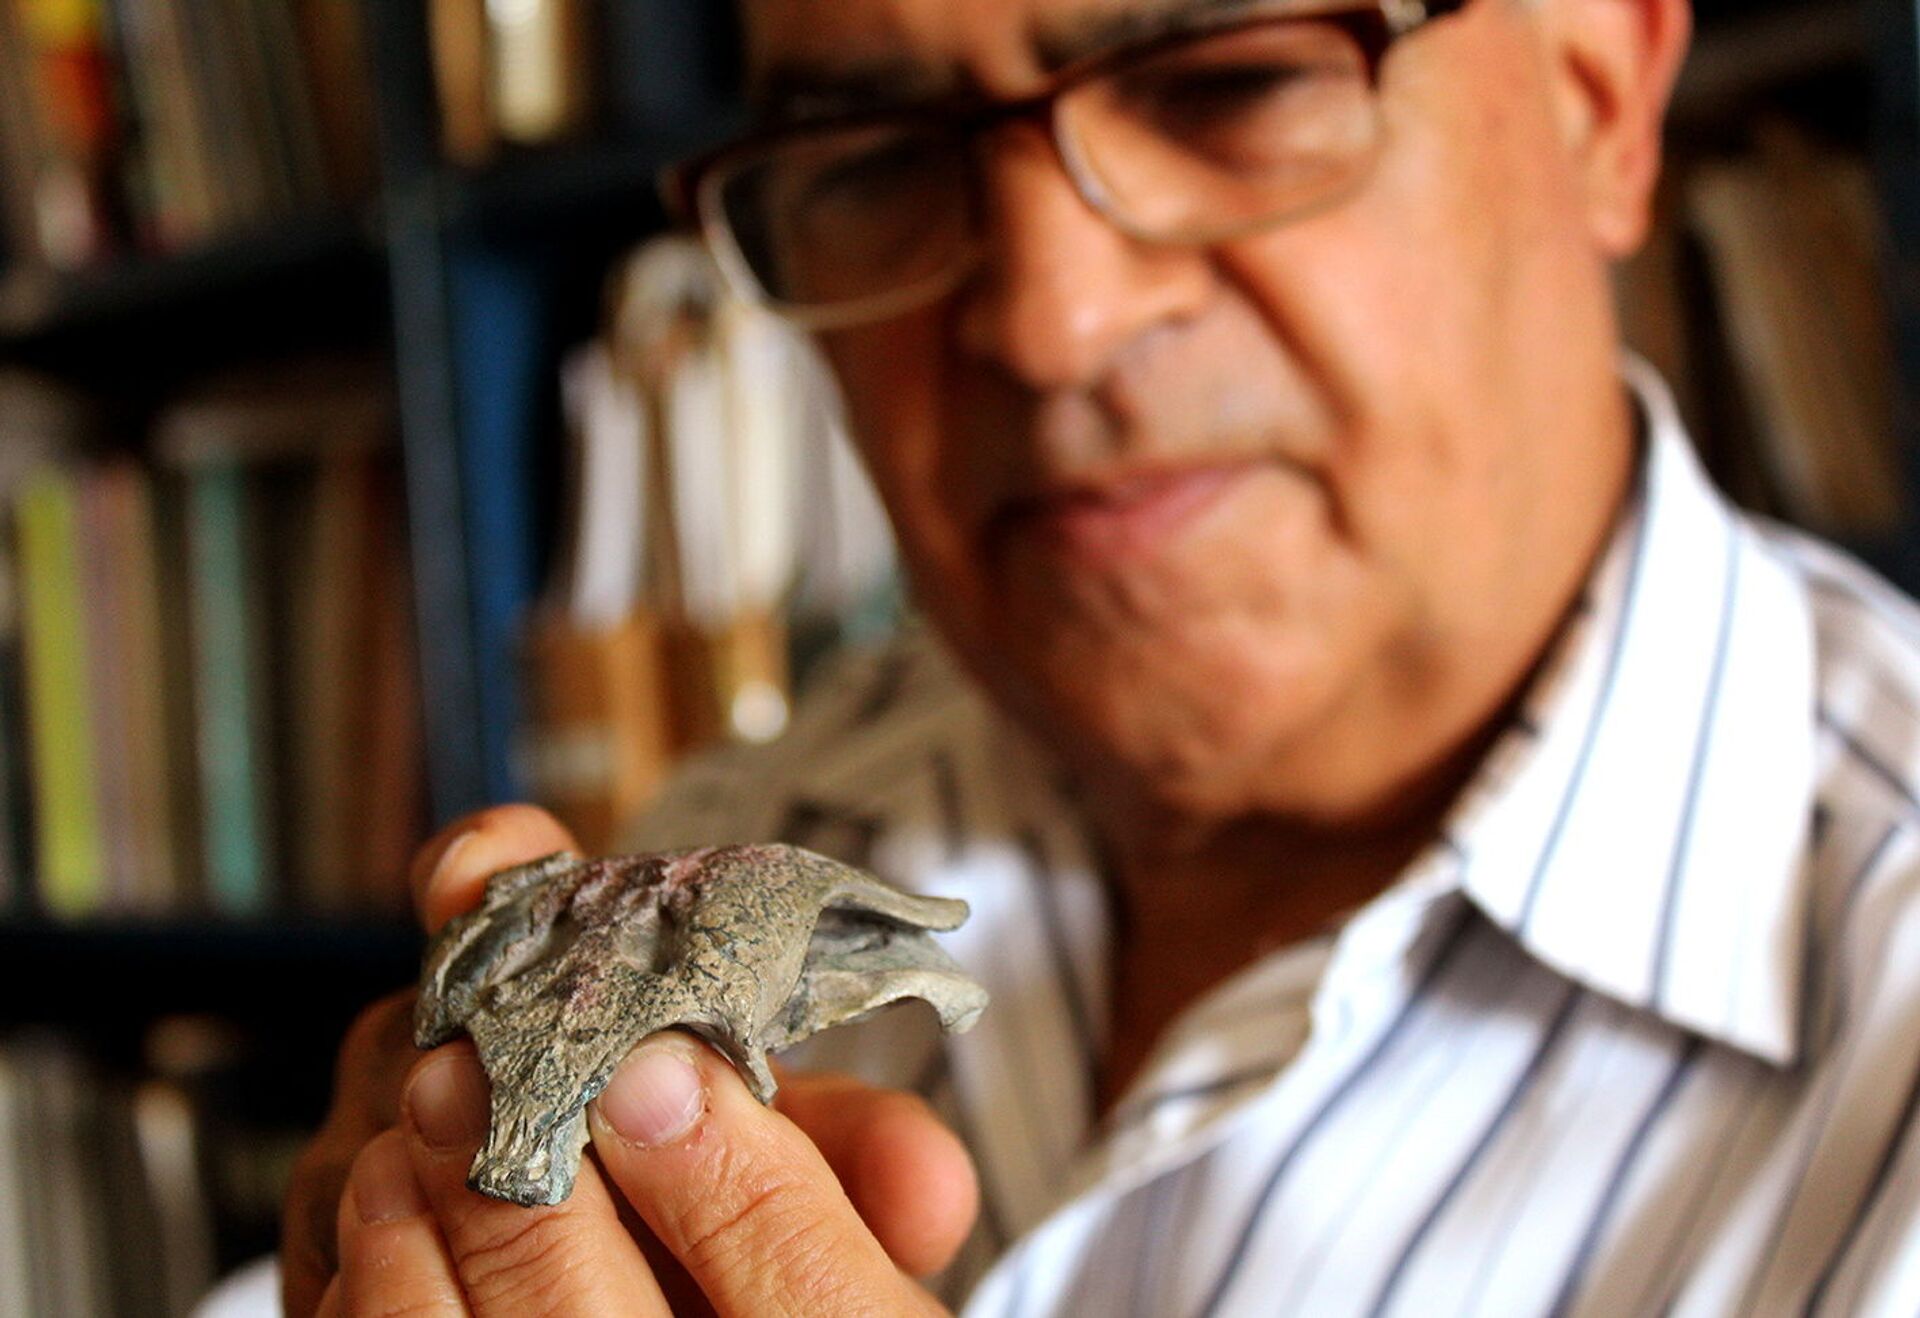 Fóssil de 150 milhões de anos descoberto no Chile pertence a 'avô' dos crocodilos modernos (FOTOS) - Sputnik Brasil, 1920, 25.07.2021